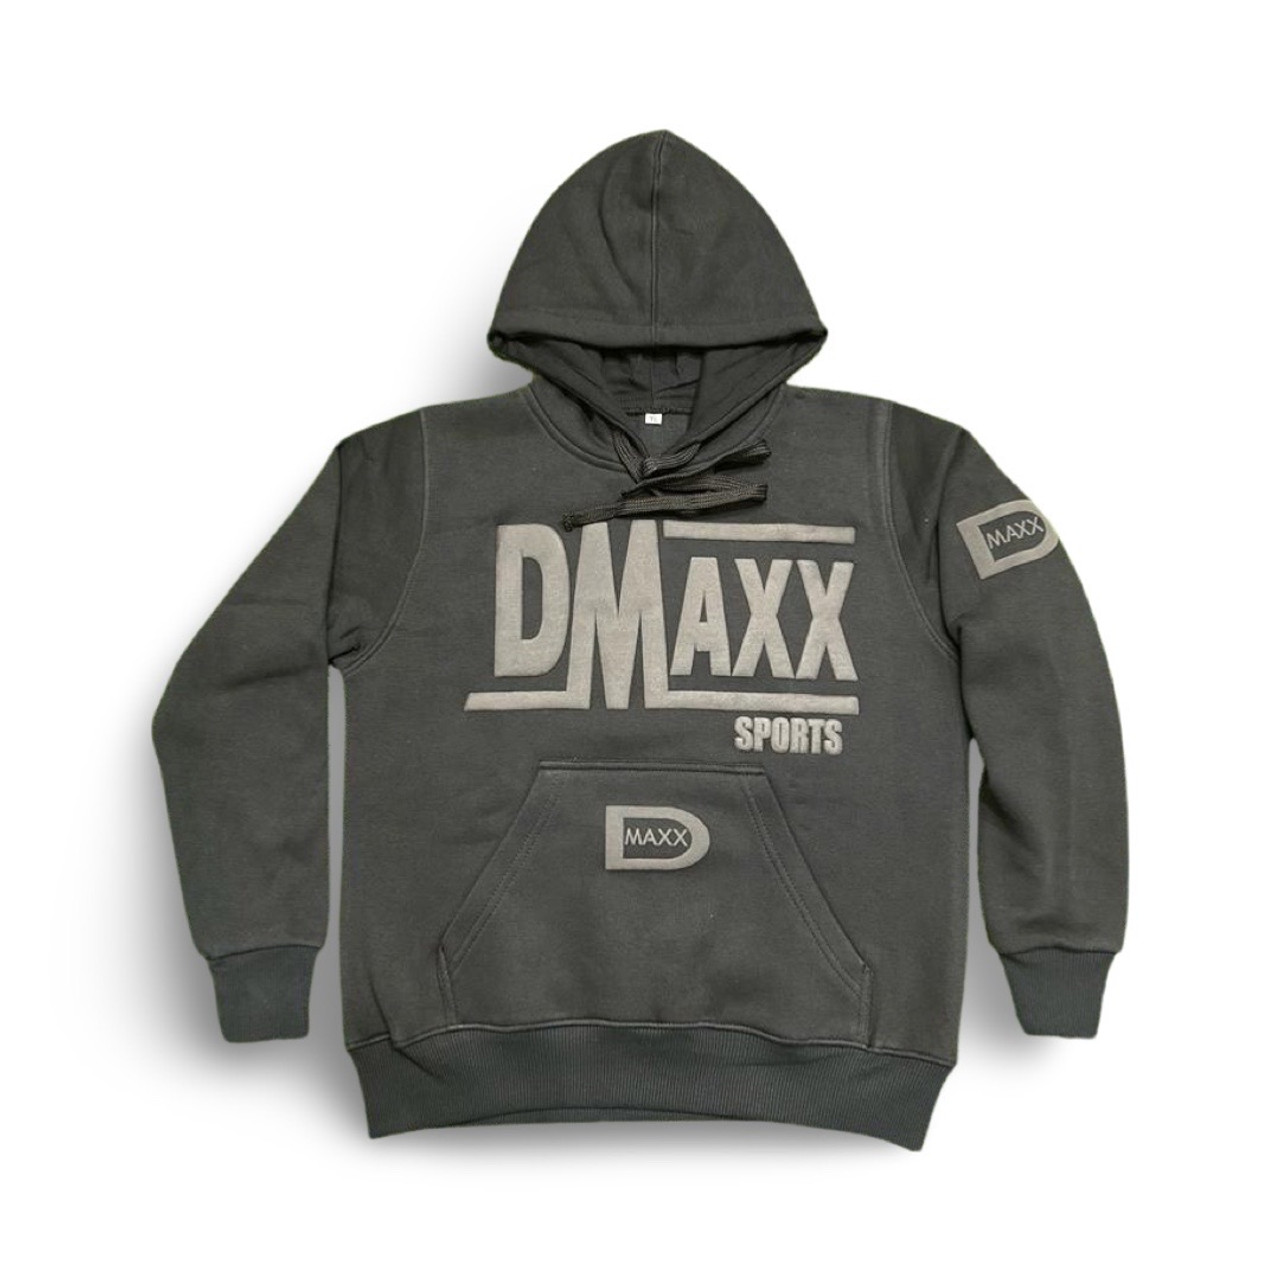 Dmaxx Black on Black hoodie